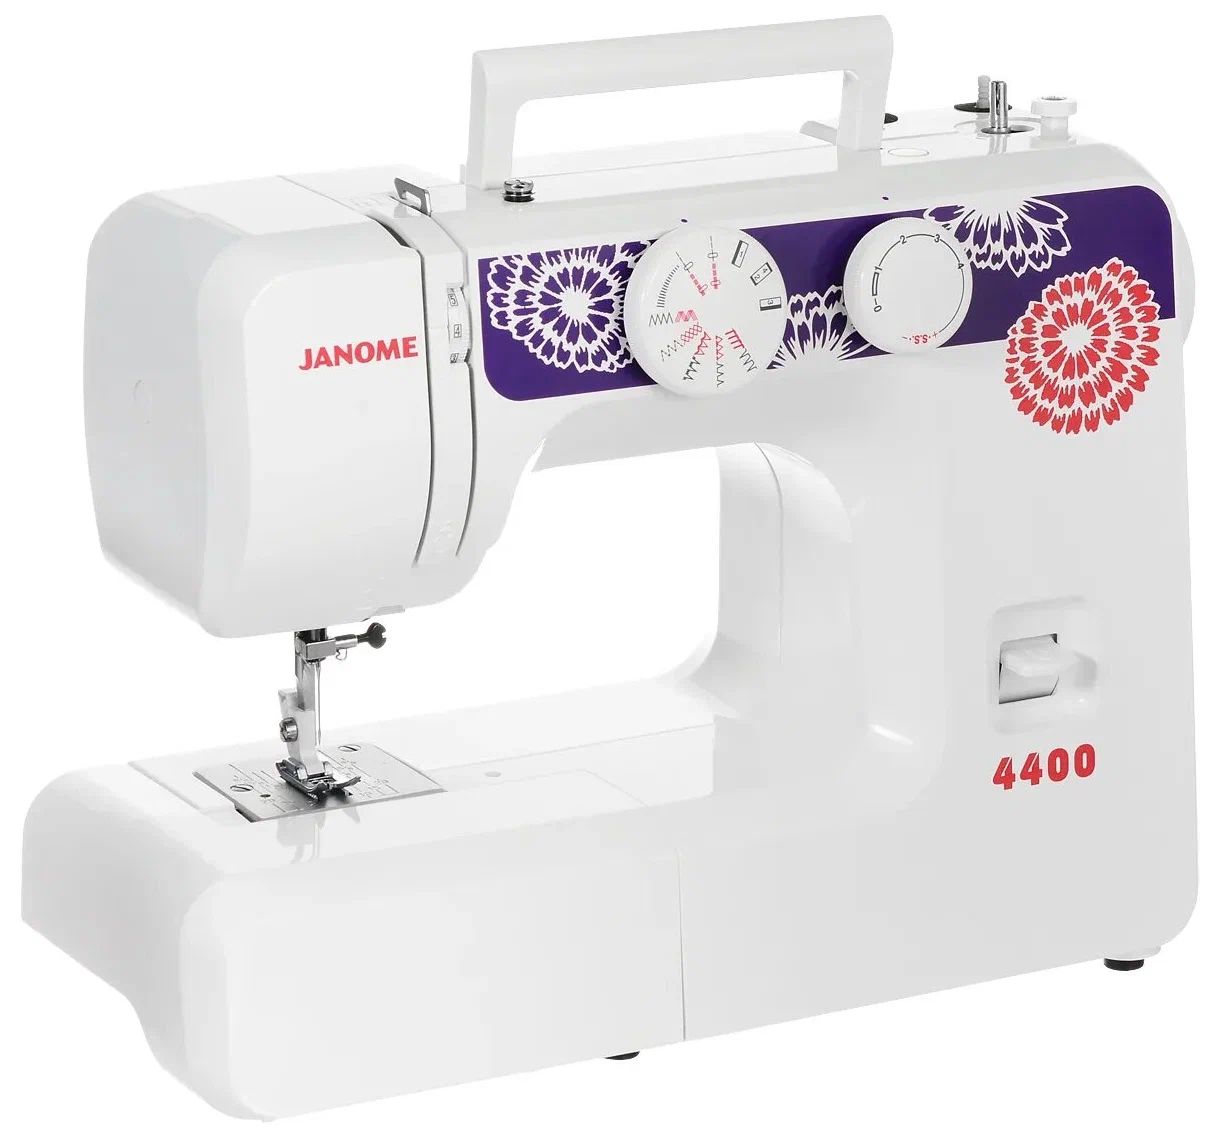 Швейная машина Janome 4400 белый, фиолетовый швейная машина janome vs 54s белый фиолетовый